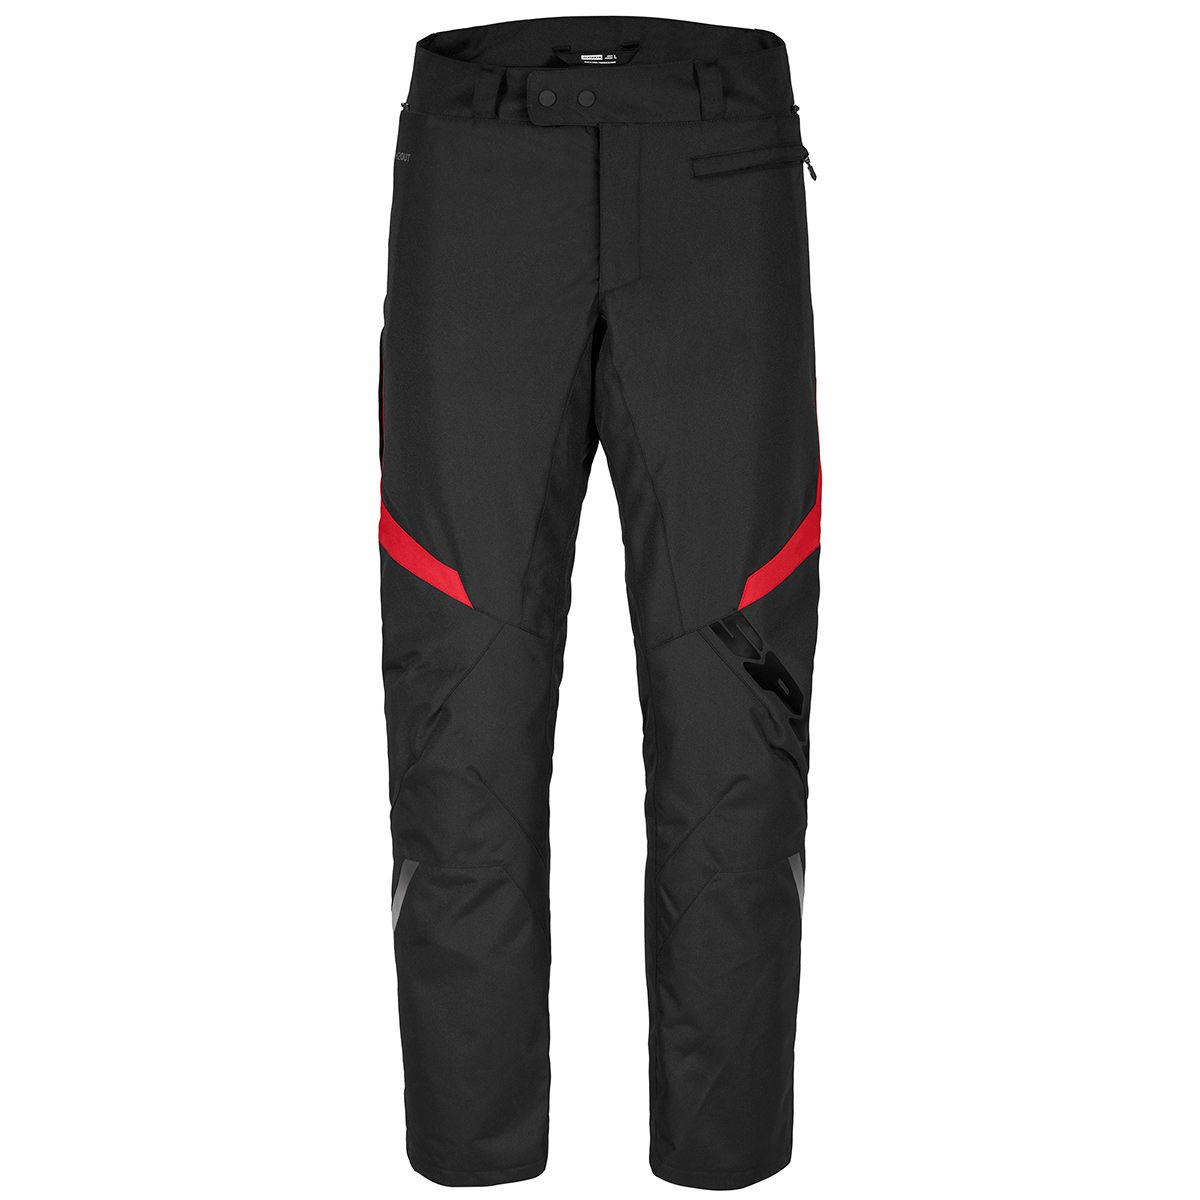 Image of EU Spidi Sportmaster Noir Rouge Pantalon Taille XL